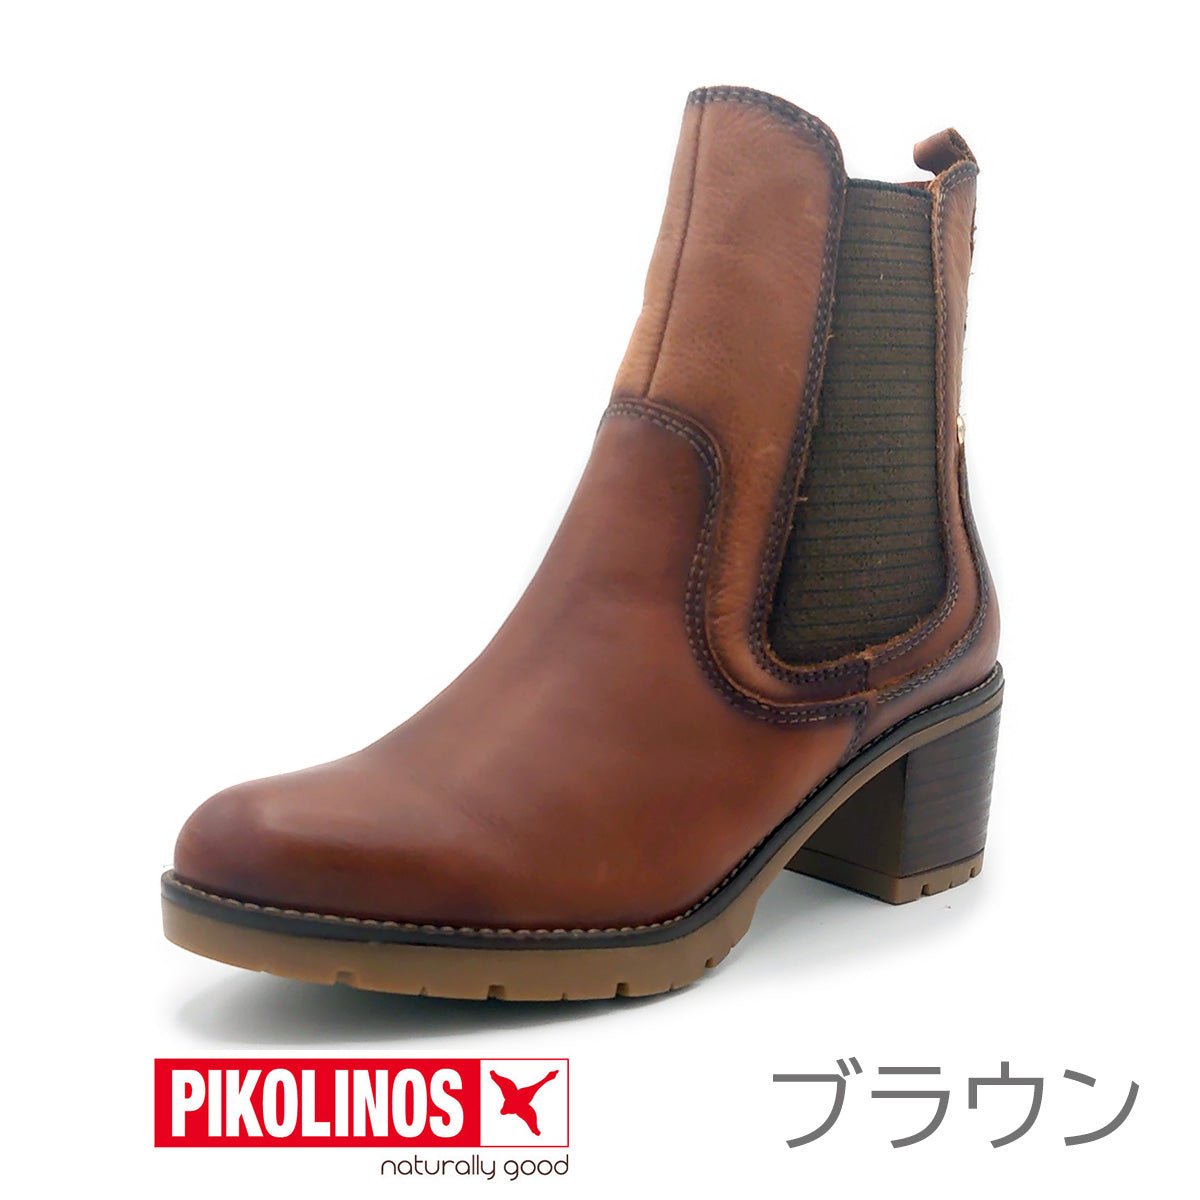 PIKOLINOS レディース サイドゴア ブーツ PK-622 LLANES W7H-8948